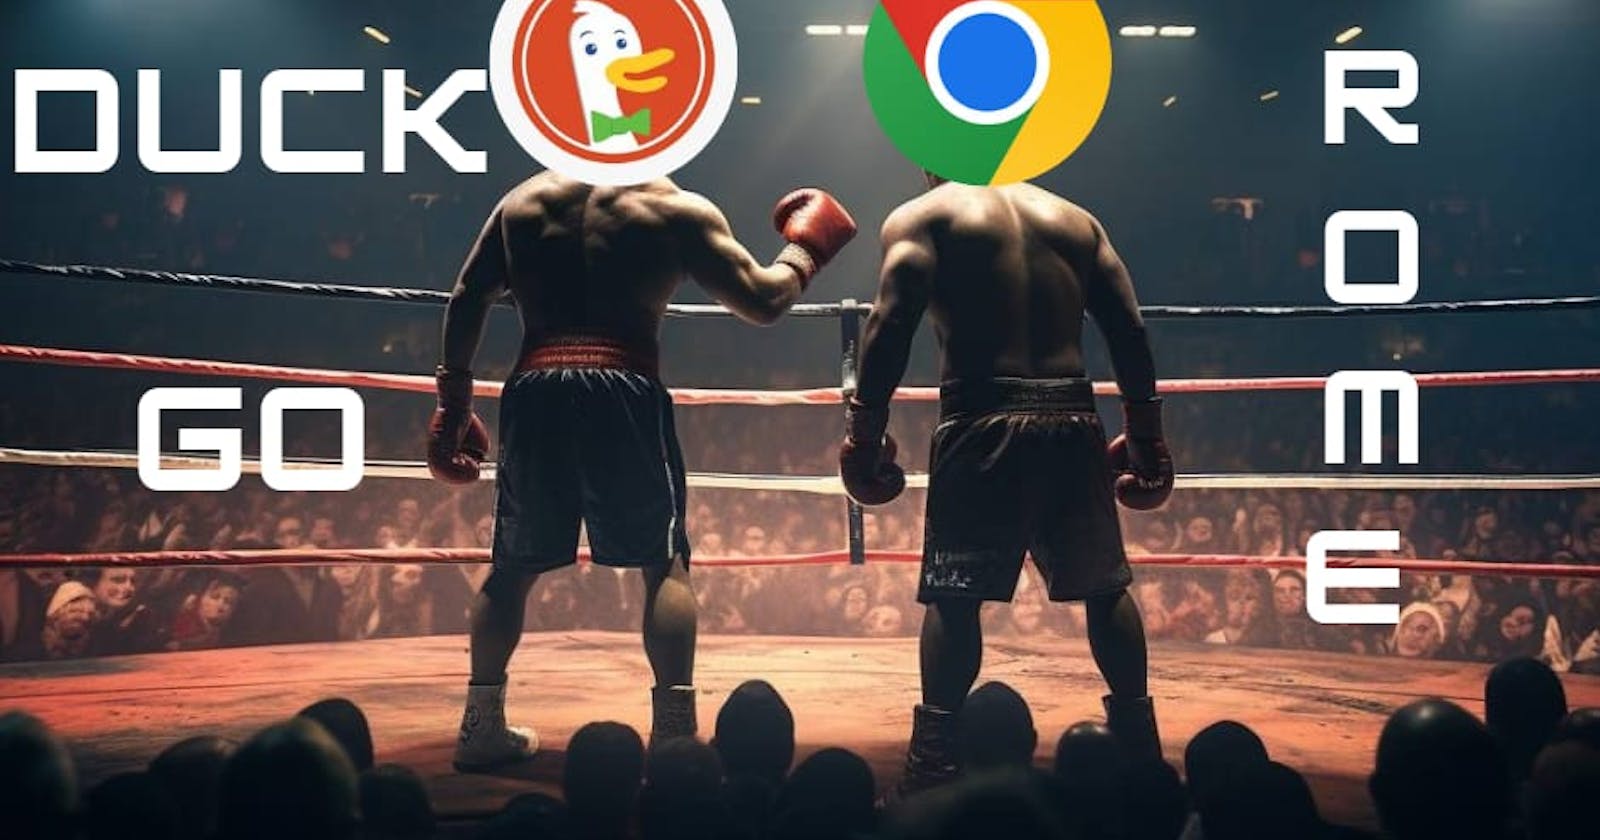 Google Chrome V/S DuckDuckGo - THE ENDGAME